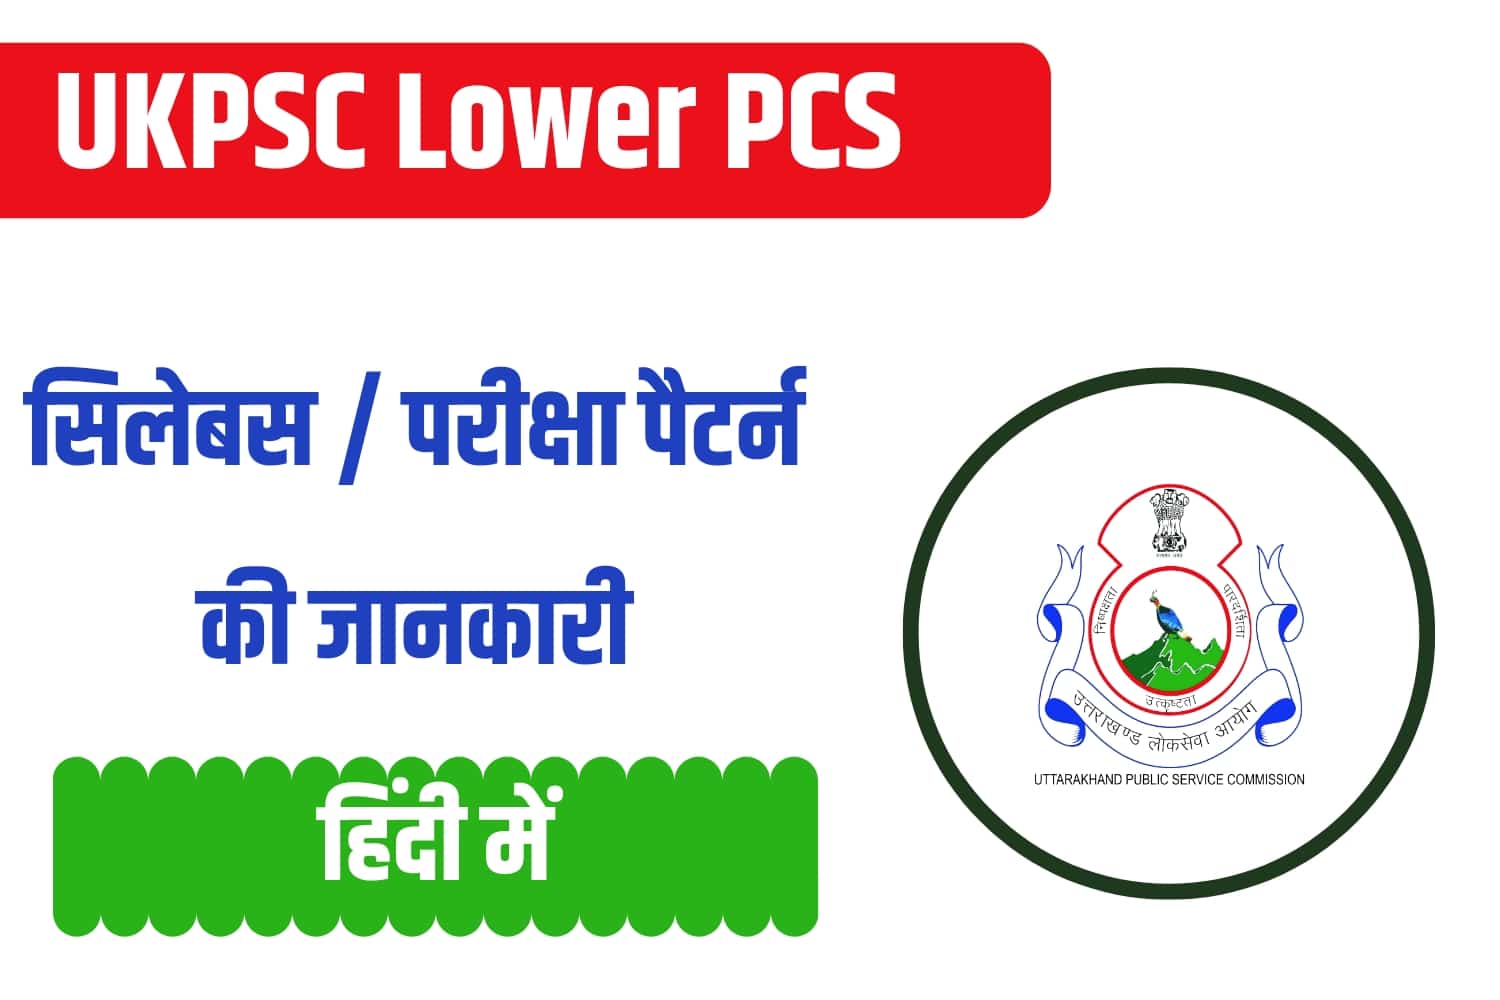 UKPSC Lower PCS Syllabus In Hindi | उत्तराखंड लोअर पीसीएस सिलेबस हिंदी में